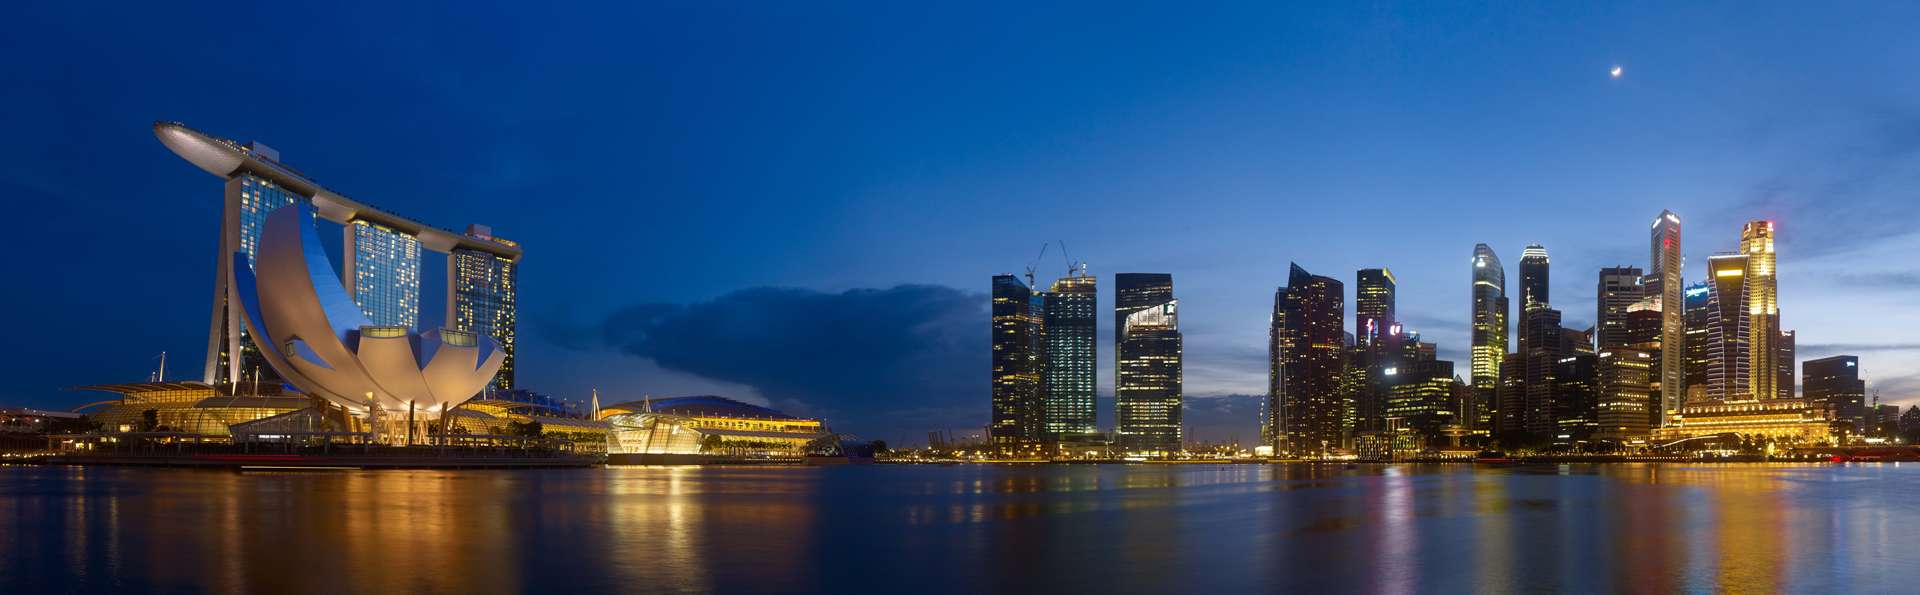 Marina Bay Sands: Hotel, Casino, Miradores y Vistas Singapur - Forum Southeast Asia